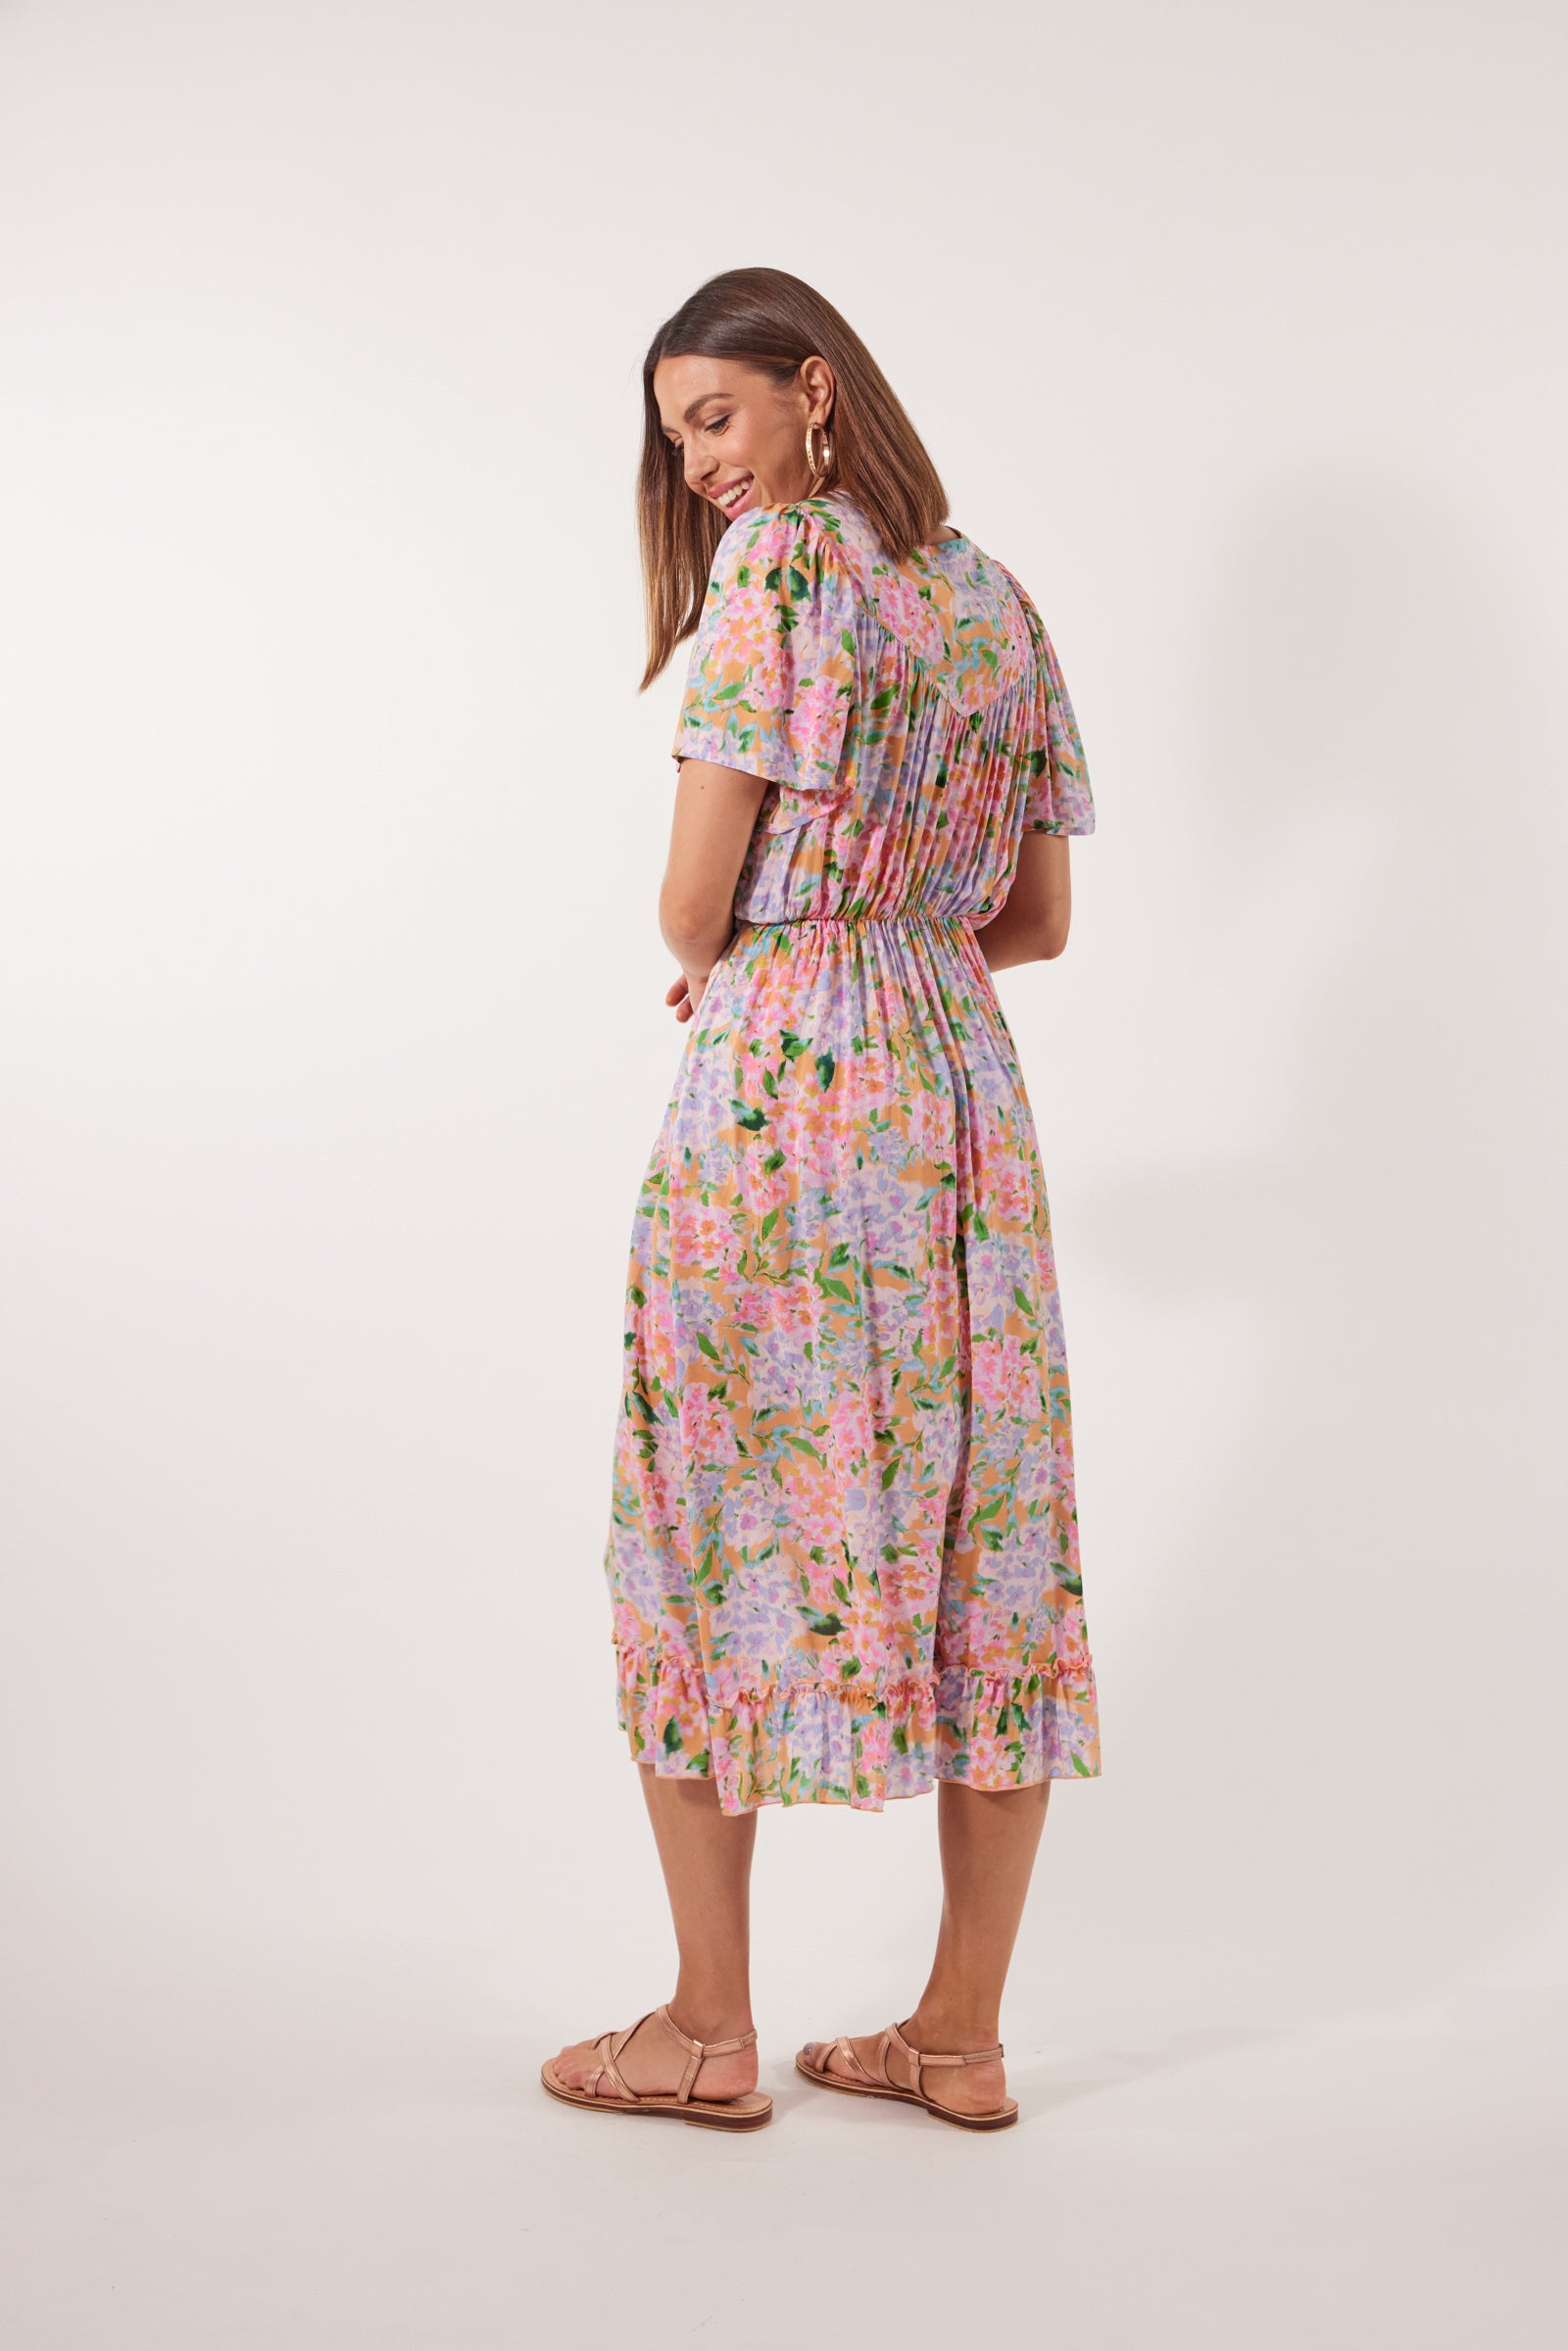 Botanical Midi Dress - Sunset Hydrangea - Isle of Mine Clothing - Dress Mid